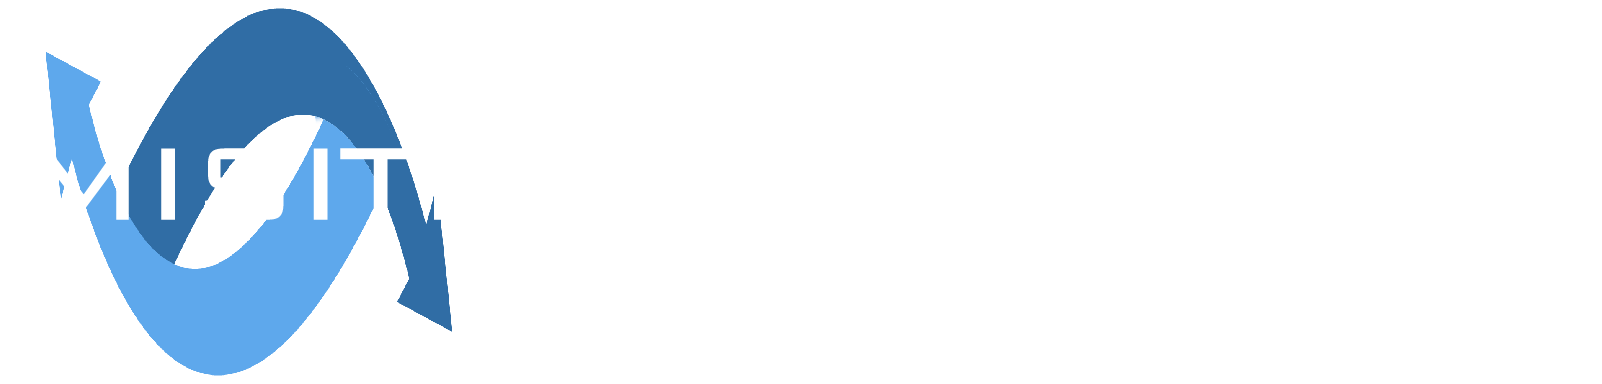 Misiti Communication - Diseño web Sevilla, Diseño gráfico, expertos en creación de páginas web.